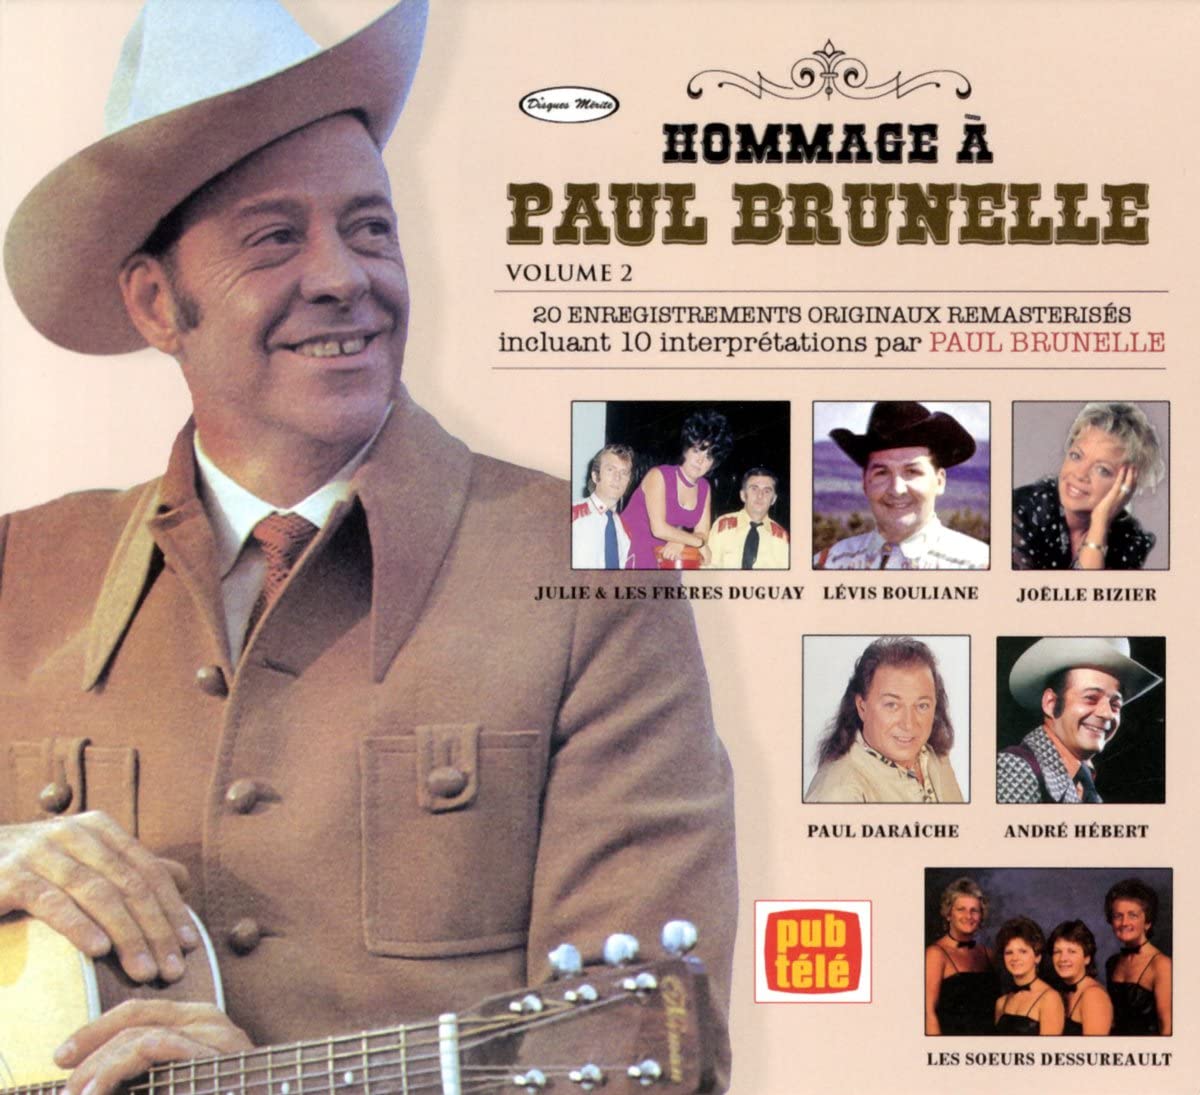 Hommage A Paul Brunelle Volume 2 [Audio CD] Paul Brunelle